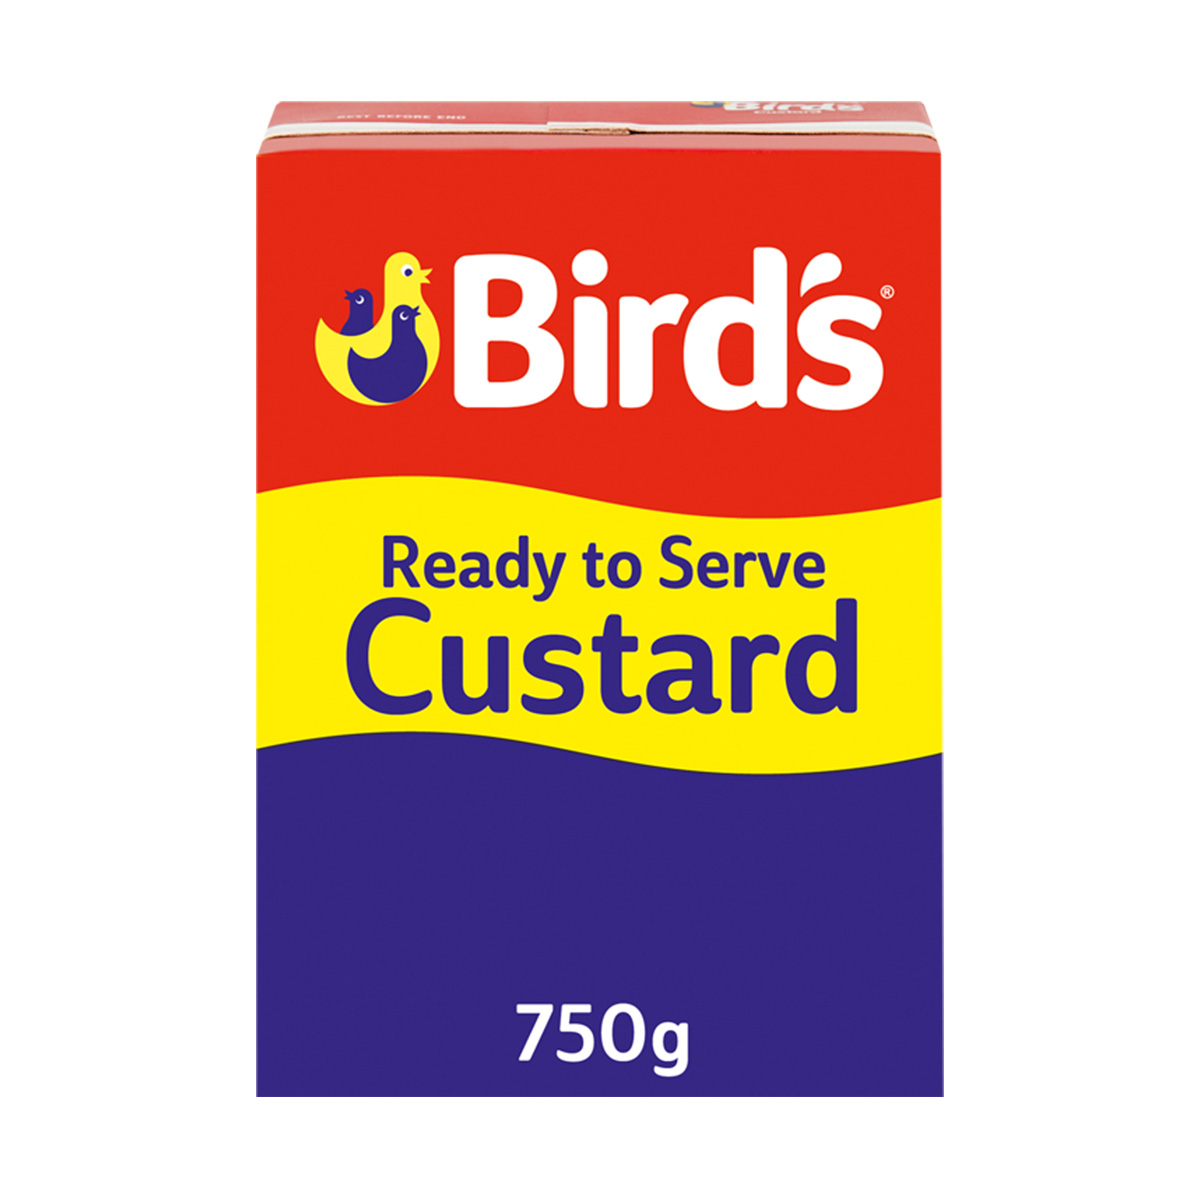 Birds Custard 750g